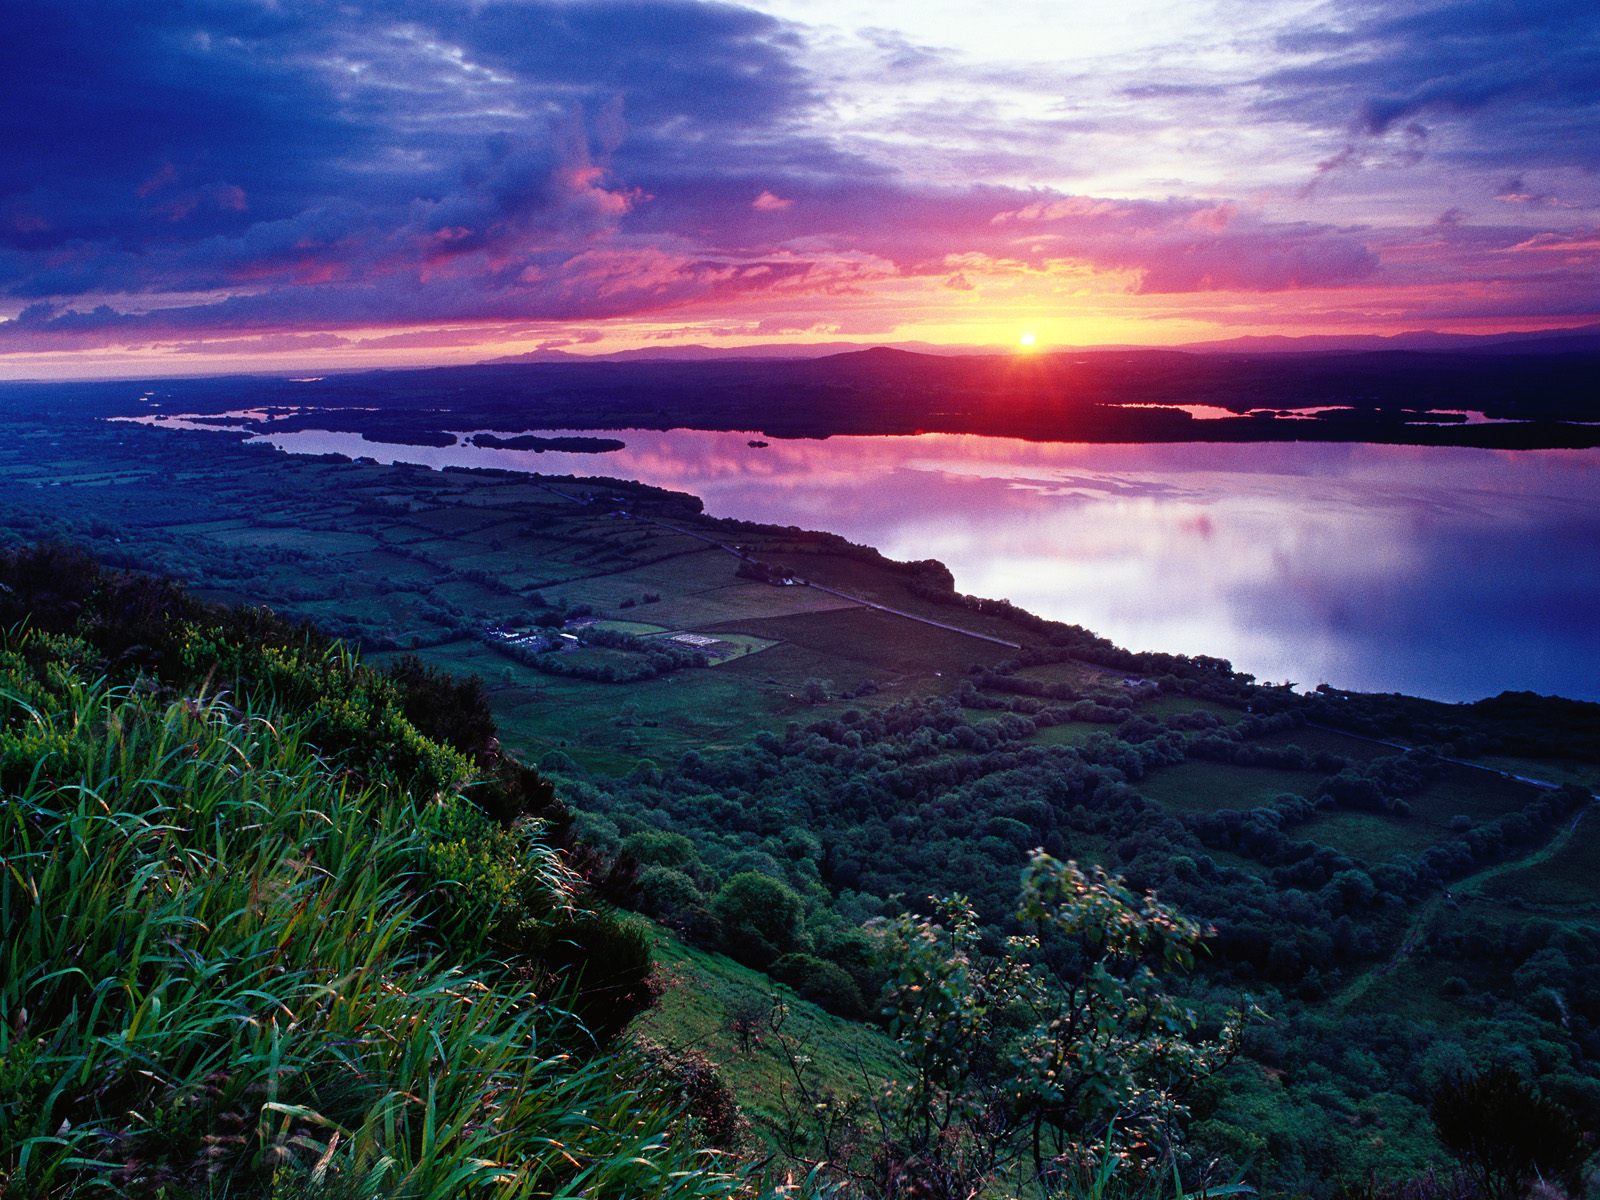 Loch Erne in Ireland